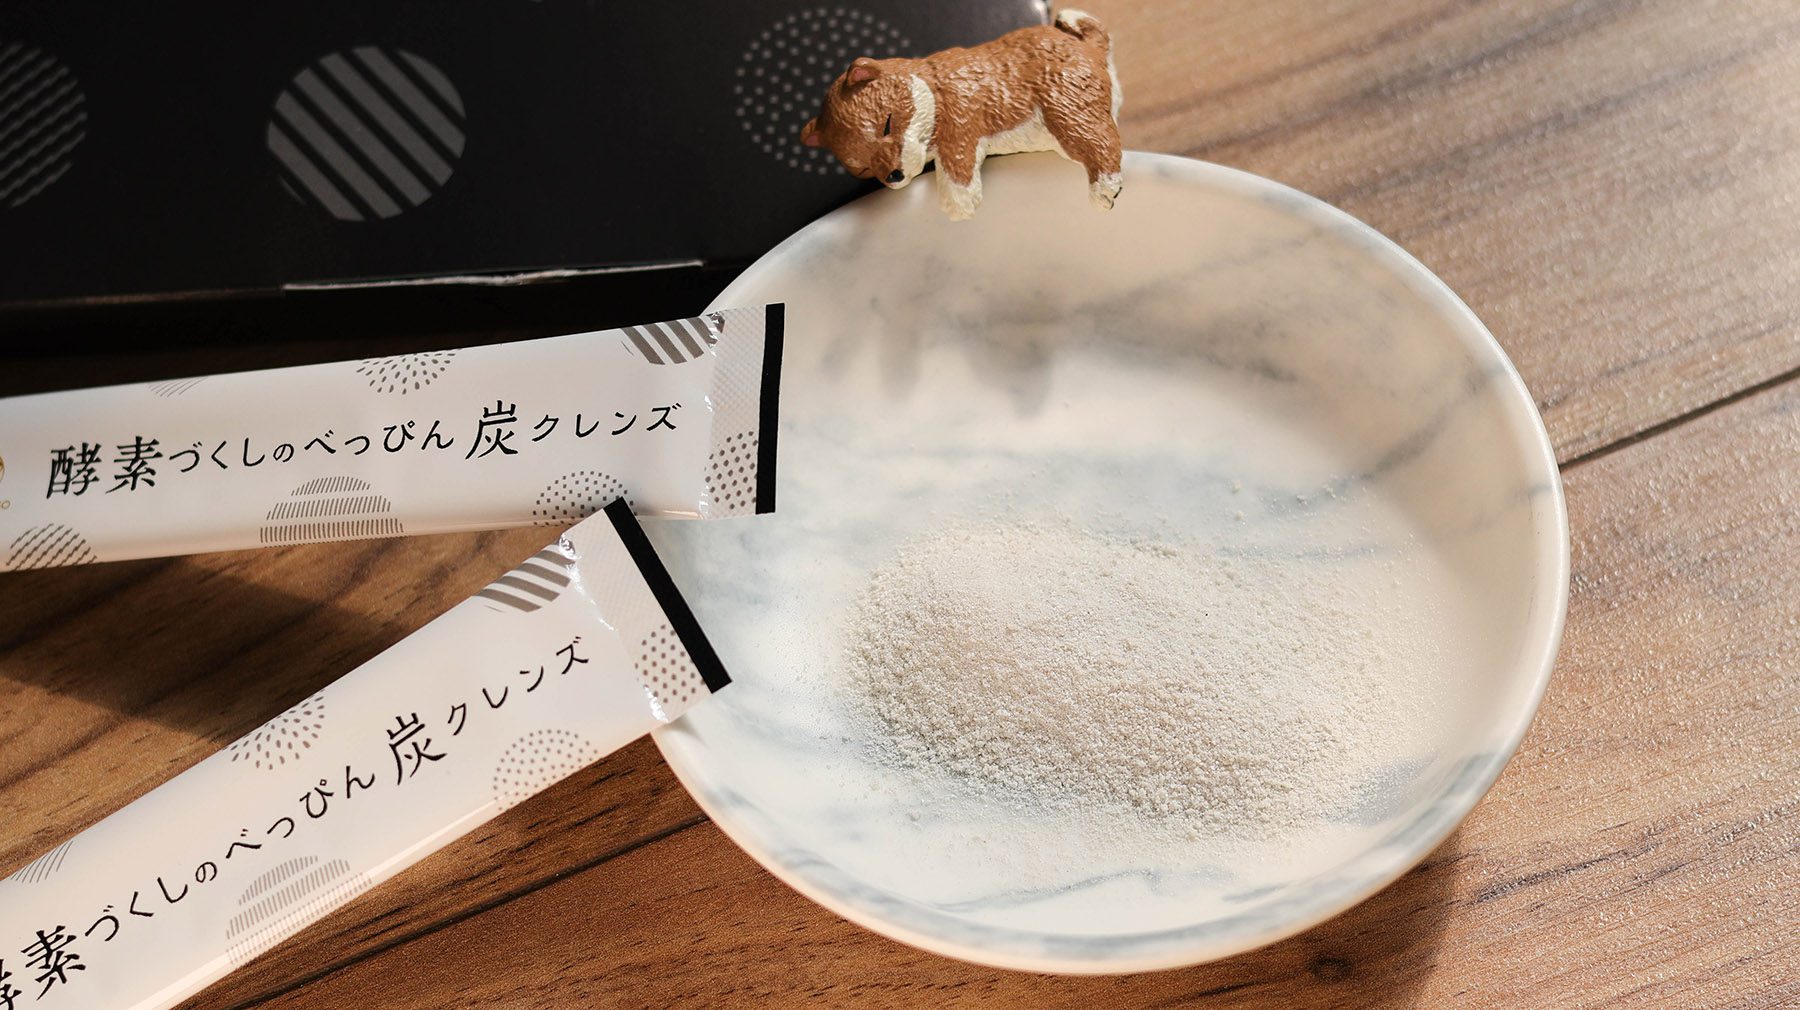 DIET-PREMIUM炭輕盈纖淨酵素粉／使用美人炭、來自日本正港日本製 @Rosa的秘密花園